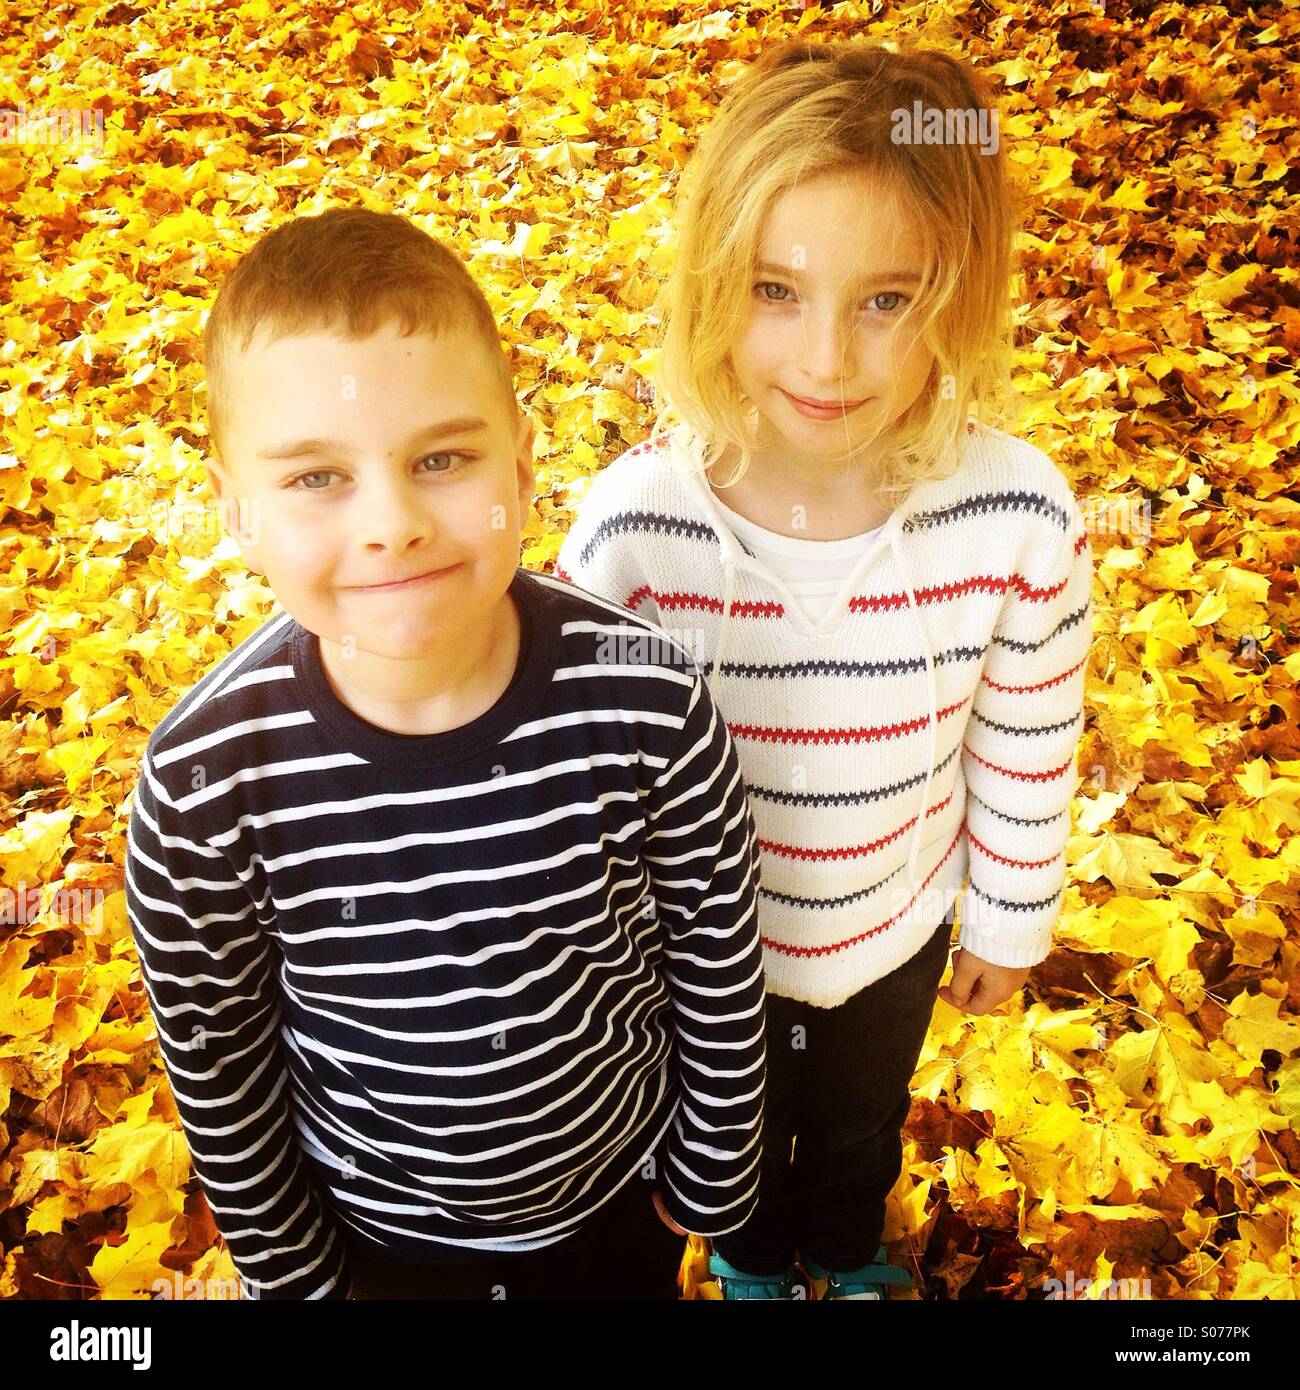 Eine niedliche Bruder und Schwester in einem Feld der goldene gelbe Herbst fallen Blätter Stockfoto